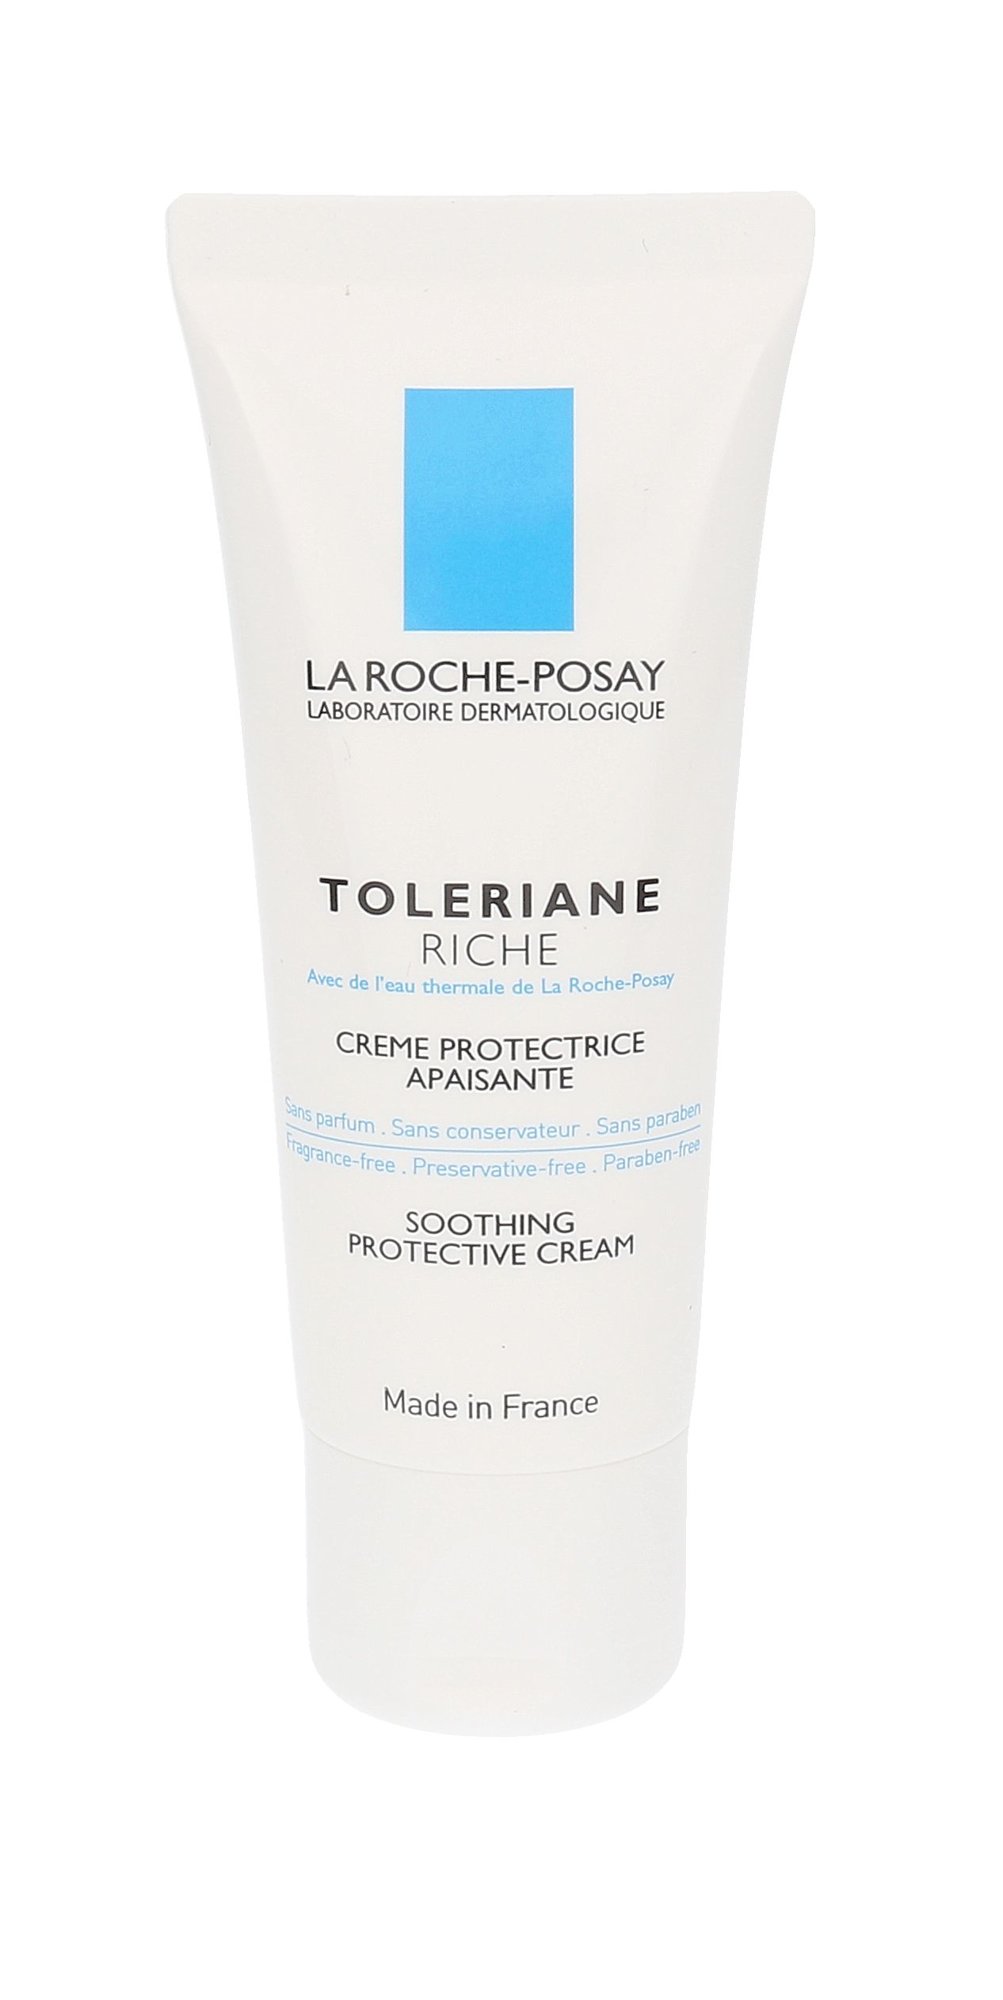 La Roche-Posay Toleriane Riche Protective Skincare